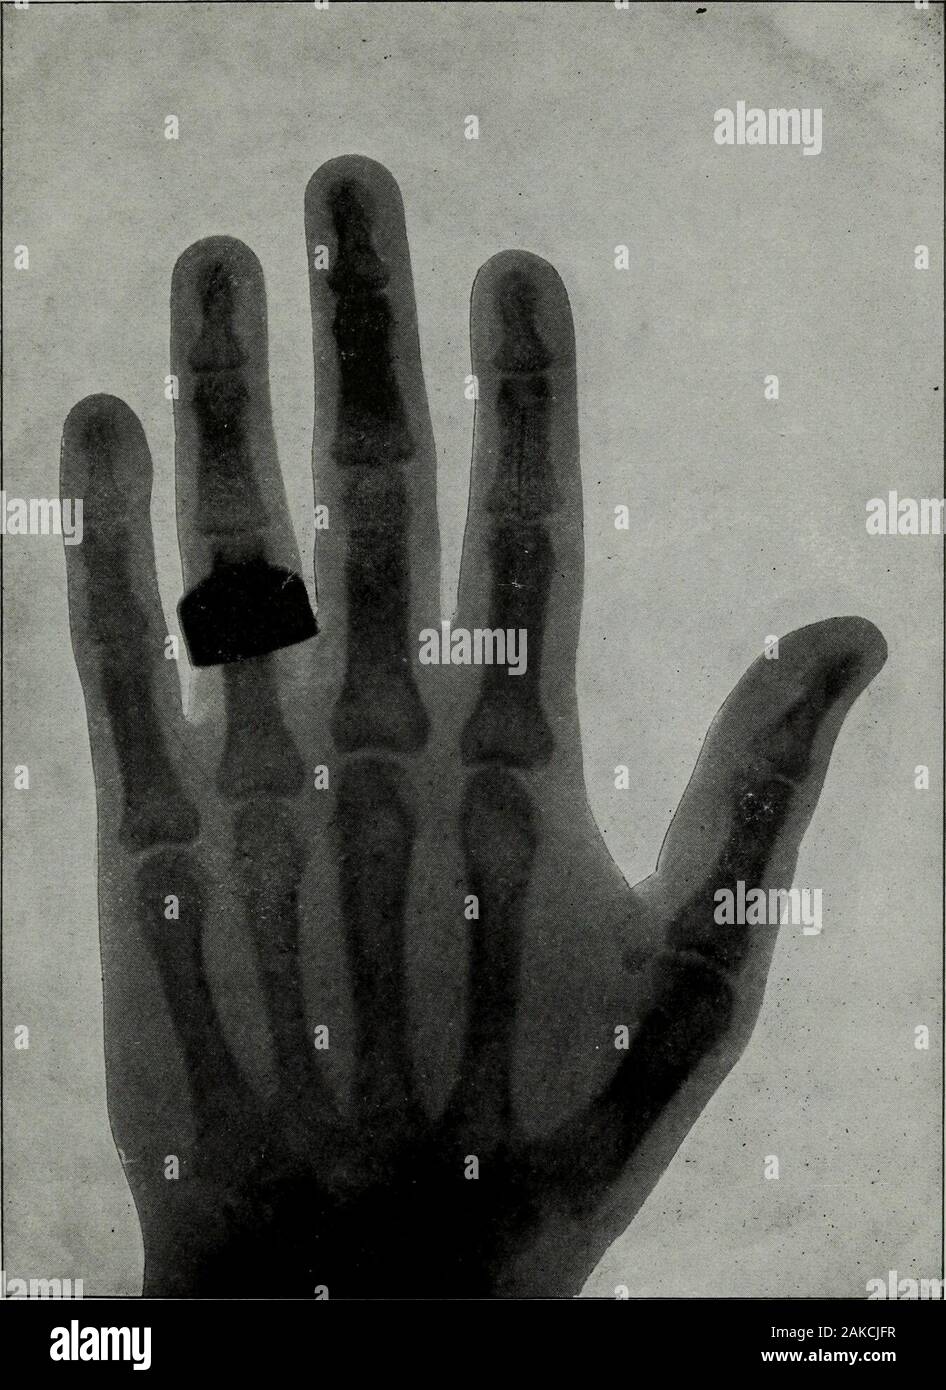 La science de la chiromancie Perin ; un traité complet et authentique . La part du président Roosevelt 243. La main de Thomas A. Edison, prises par les rayons X. 245 LA PART DE L'AMIRAL GEORGE DEWEY Banque D'Images